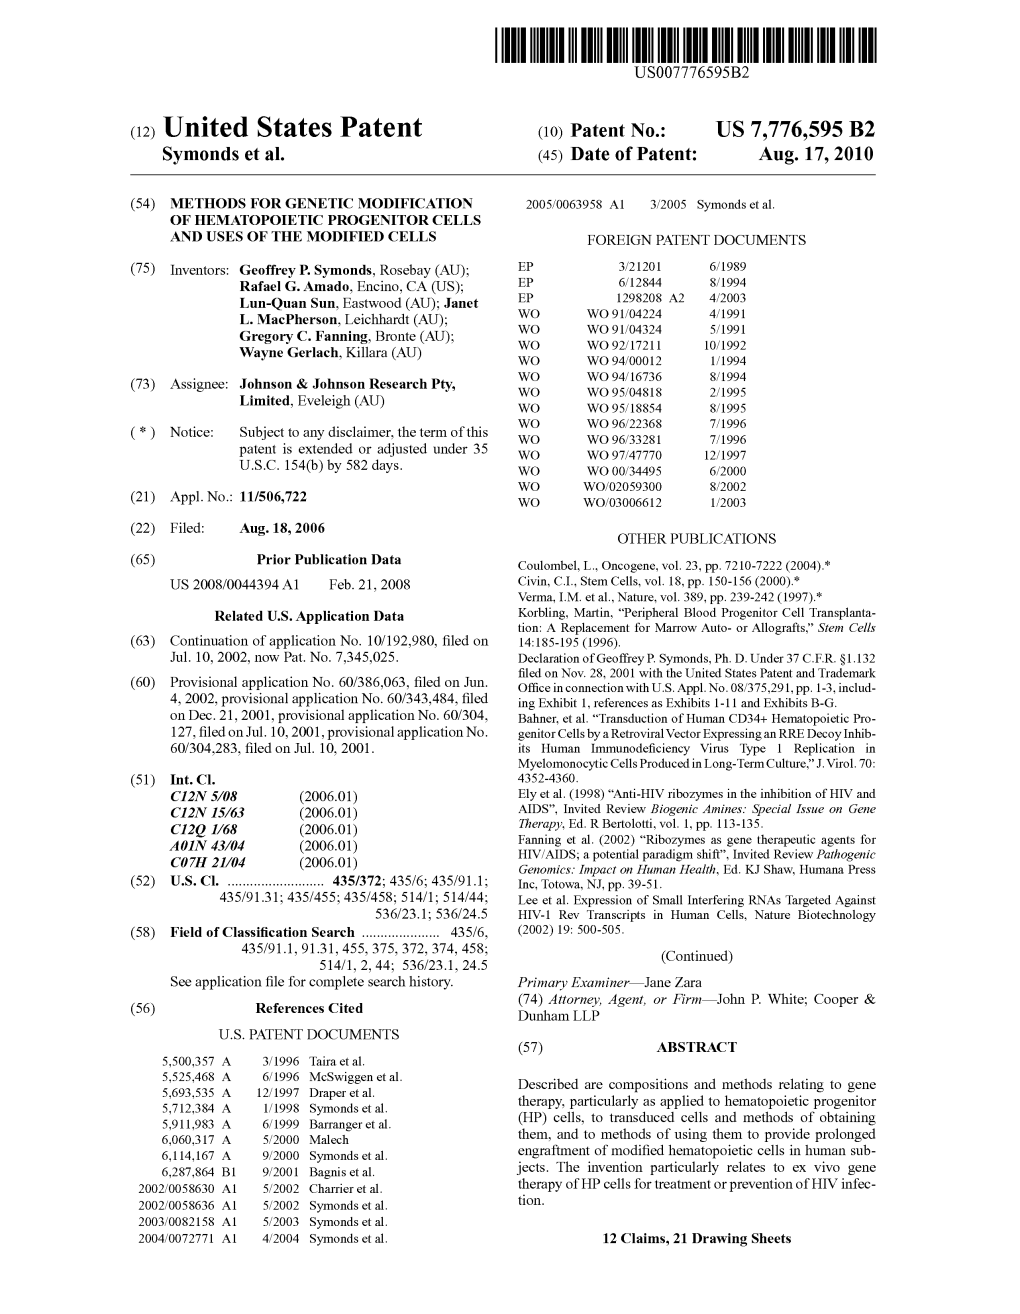 (12) United States Patent (10) Patent No.: US 7,776,595 B2 Symonds Et Al